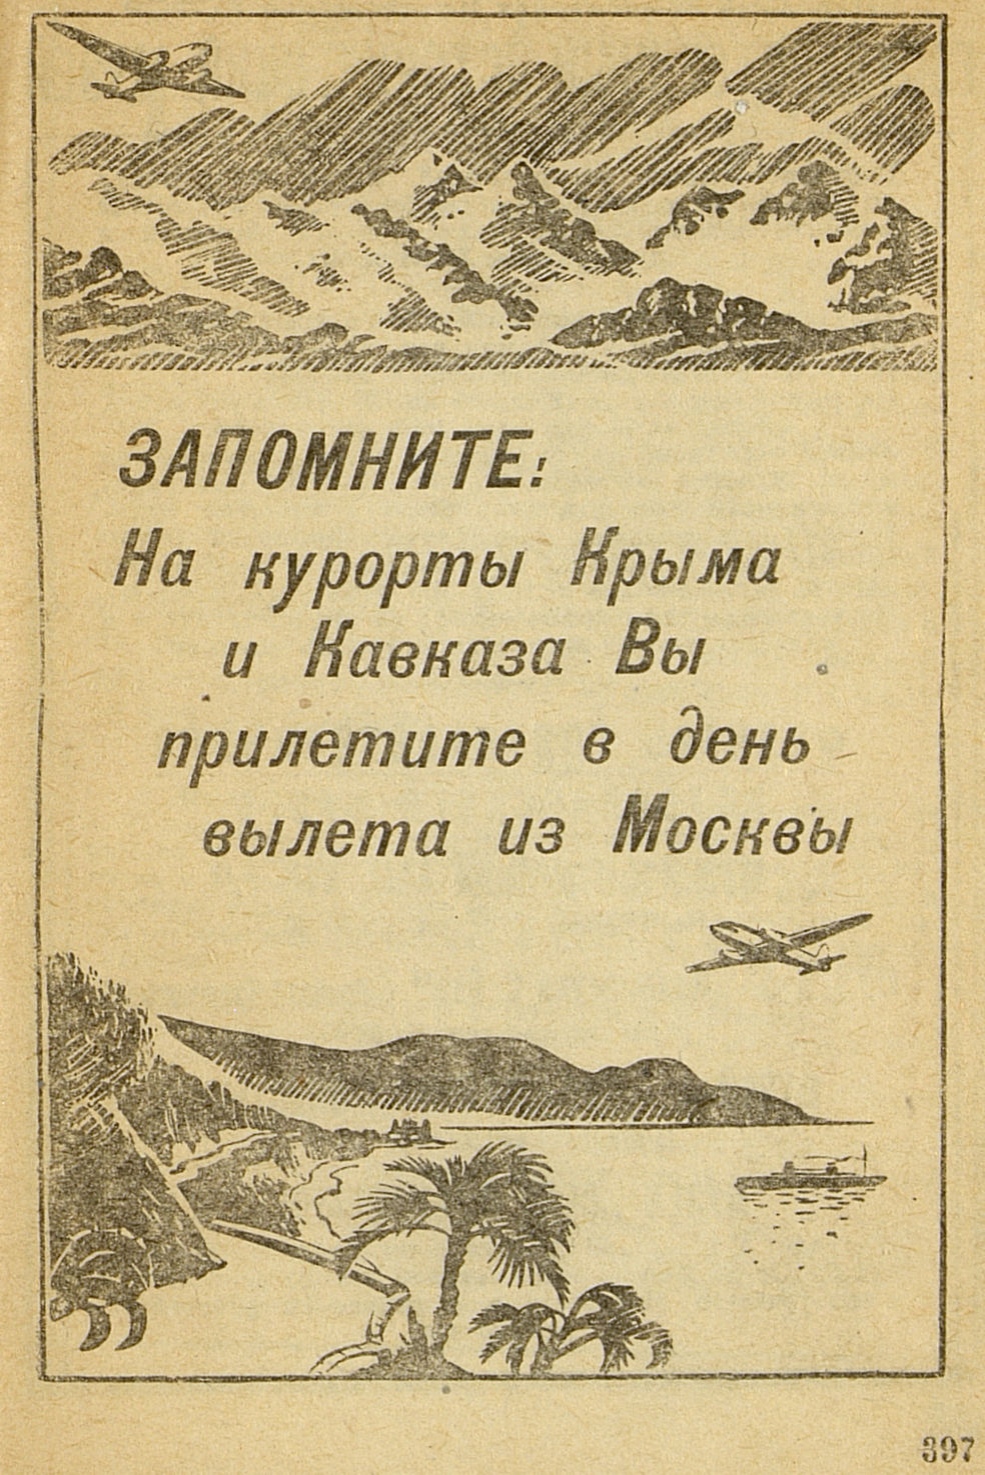 Советская реклама 1940 года. Полеты на курорты Крыма и Кавказа